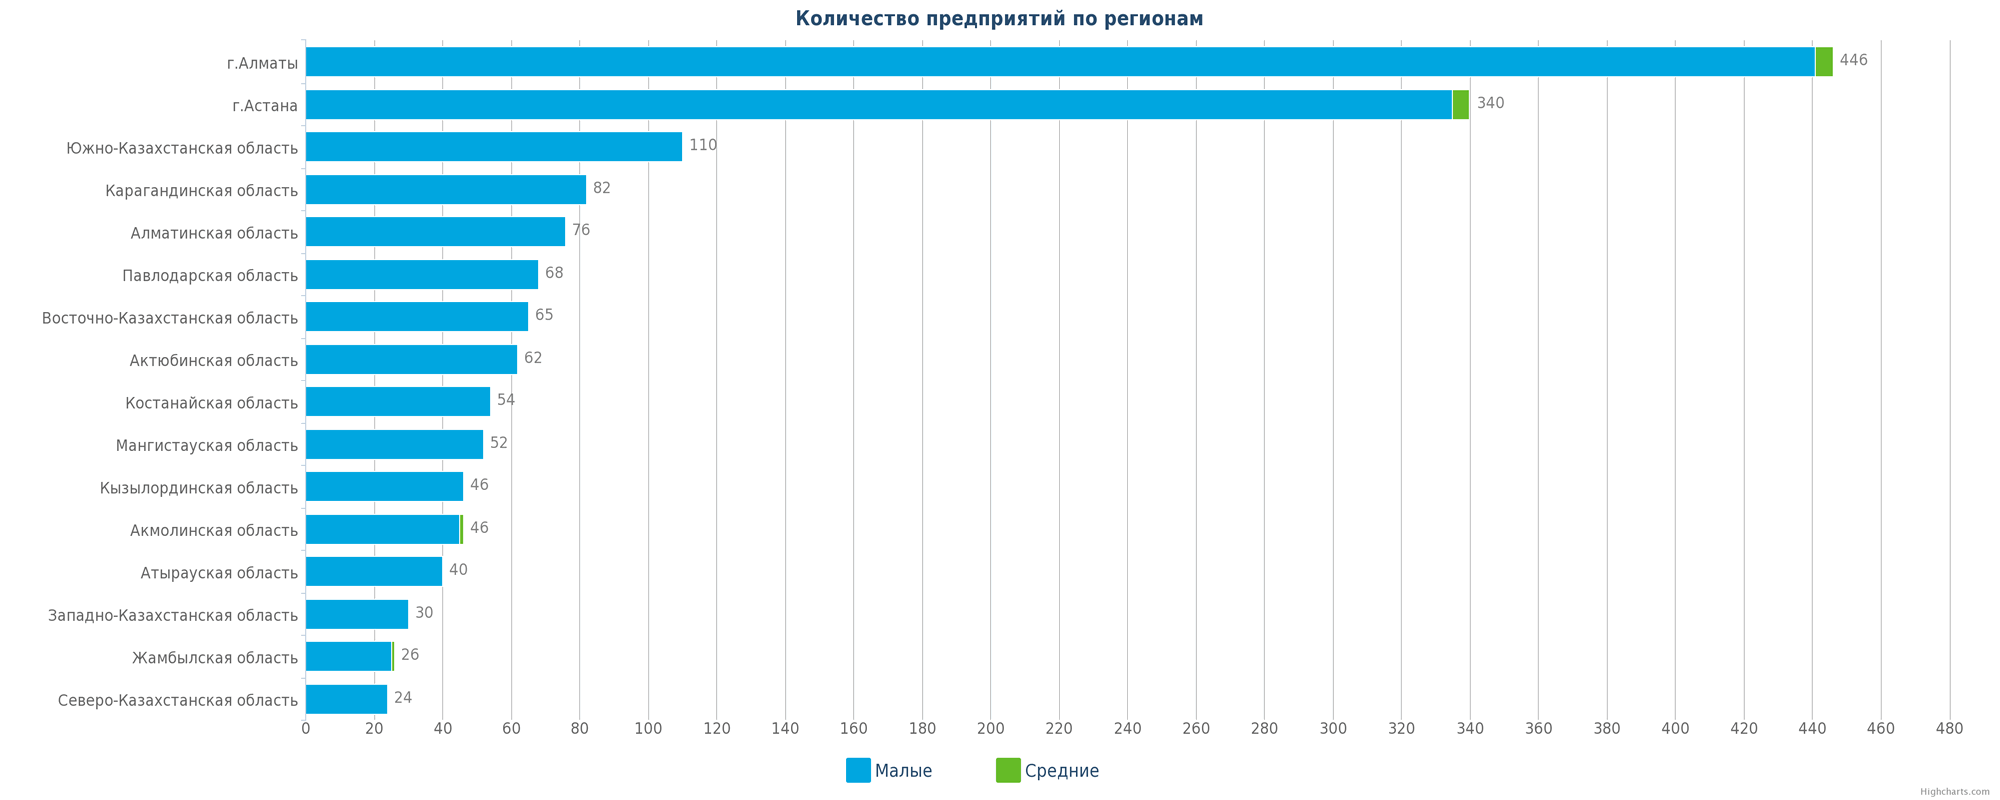 Количество новых организаций по регионам Казахстана